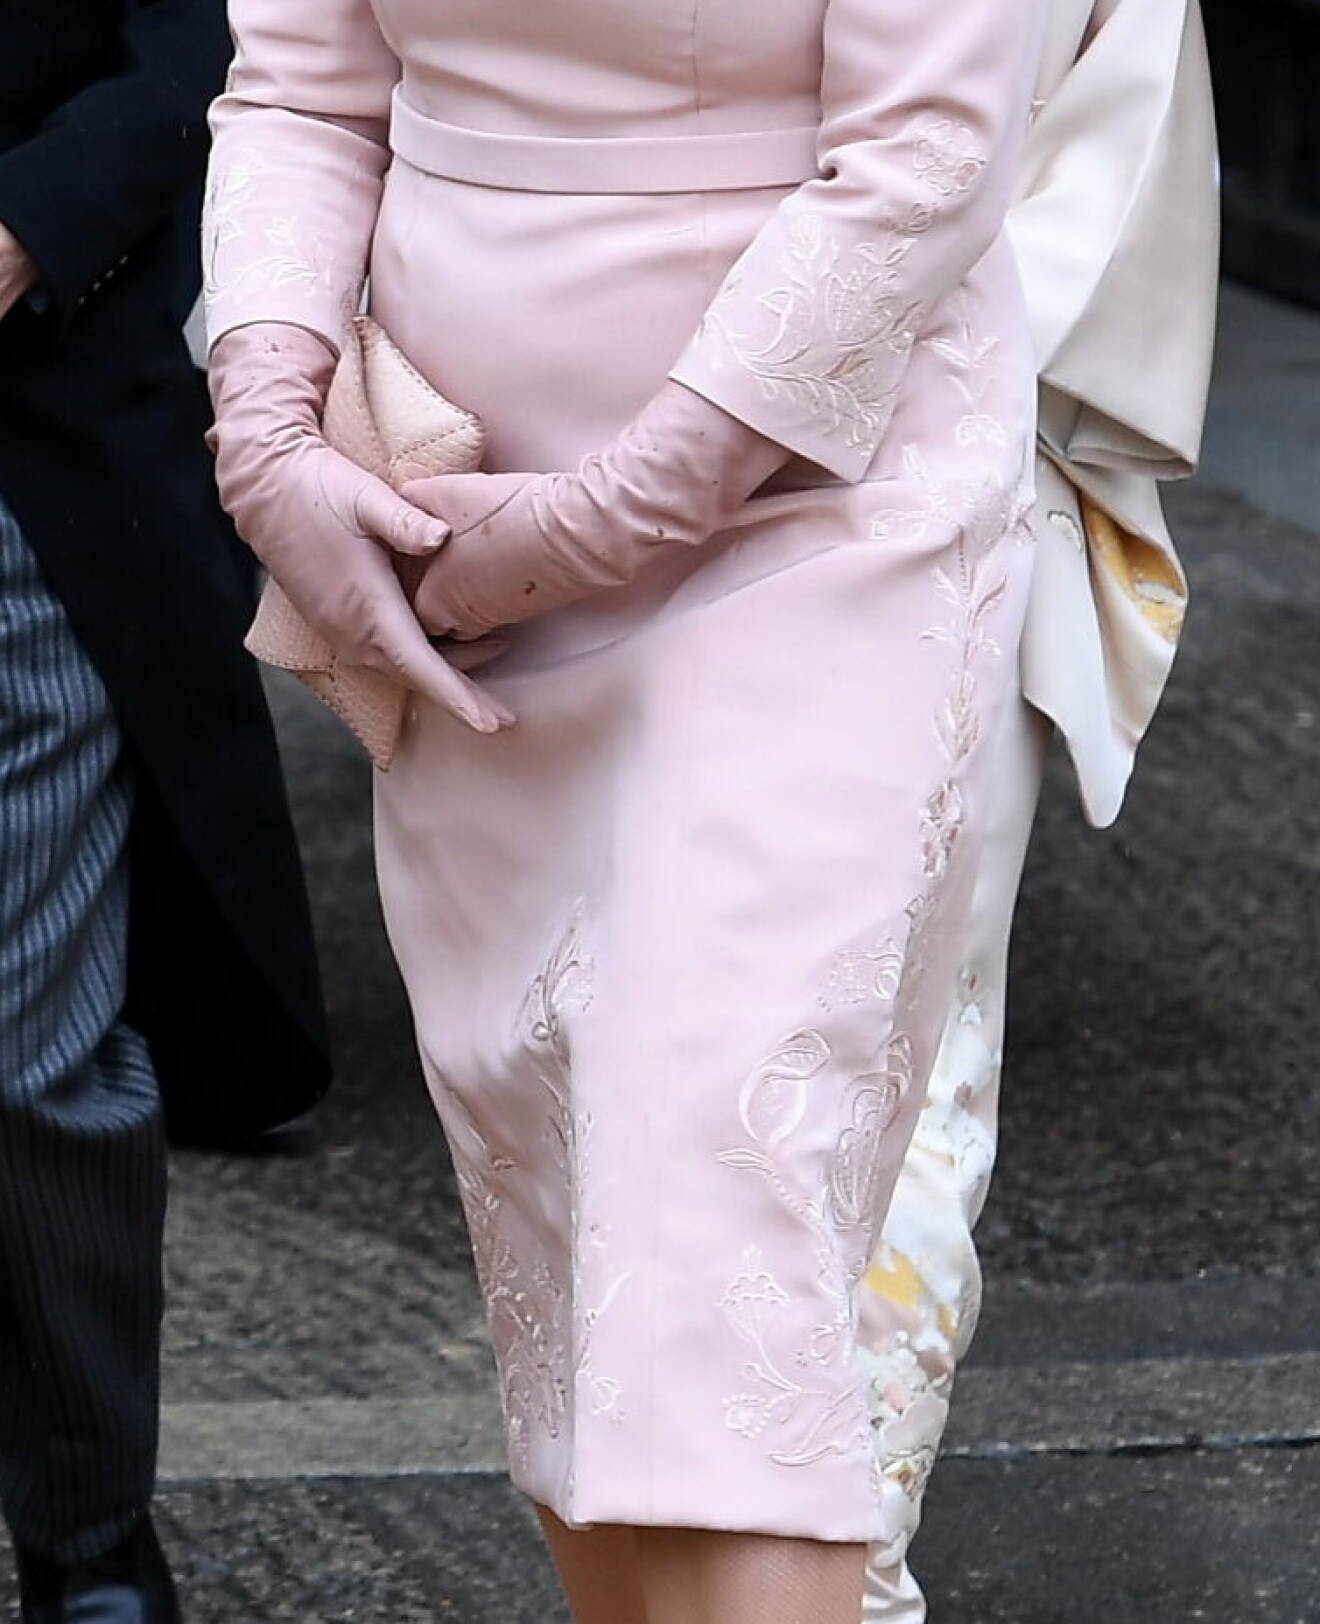 Kronprinsessan Mette-Marit vid kung Charles kröning – klädd i rosa klänning från Peter Dundas